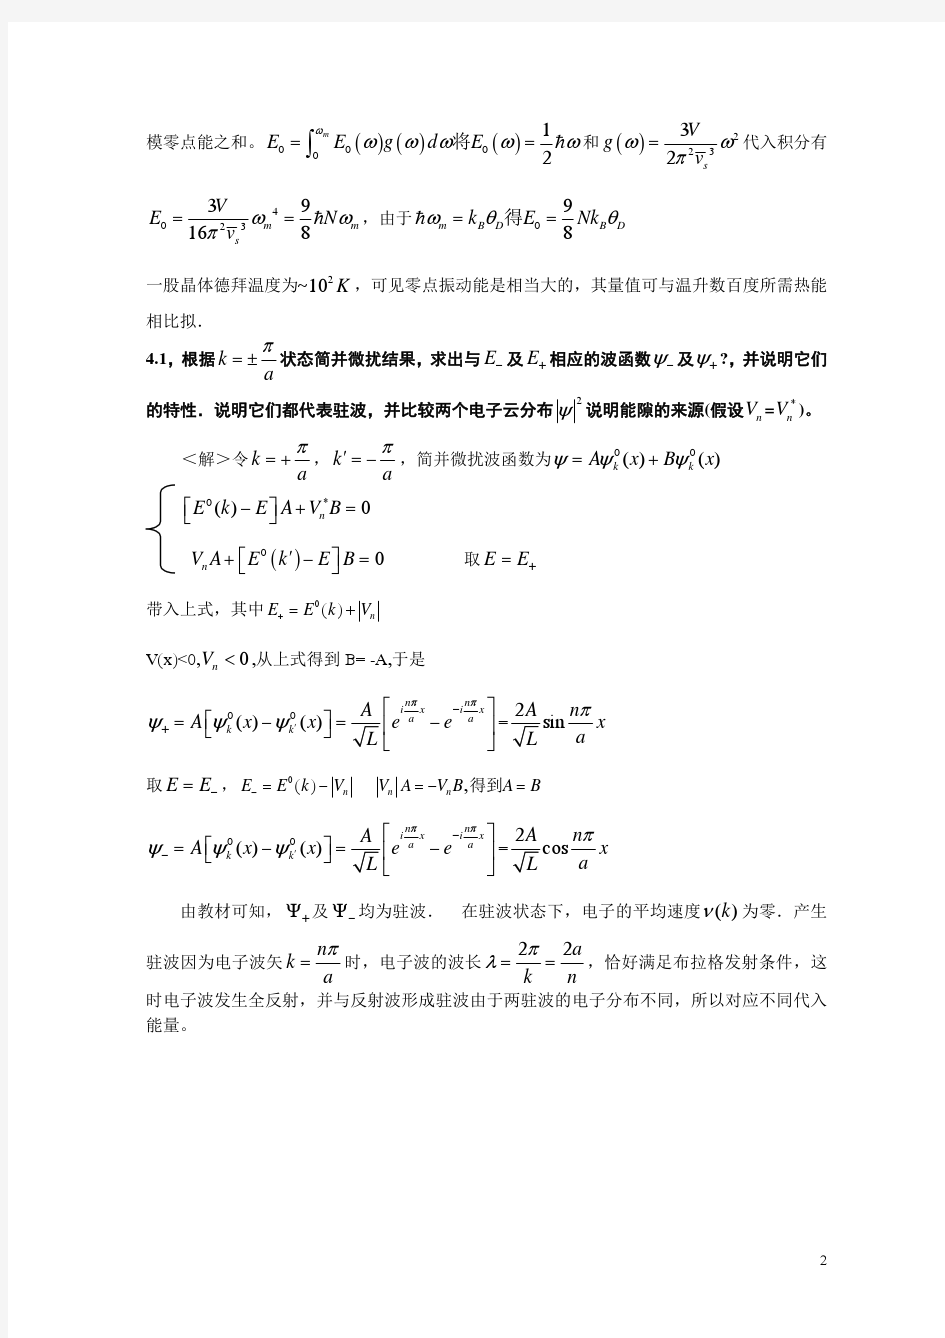 《固体物理学(黄昆)》课后习题答案(2)